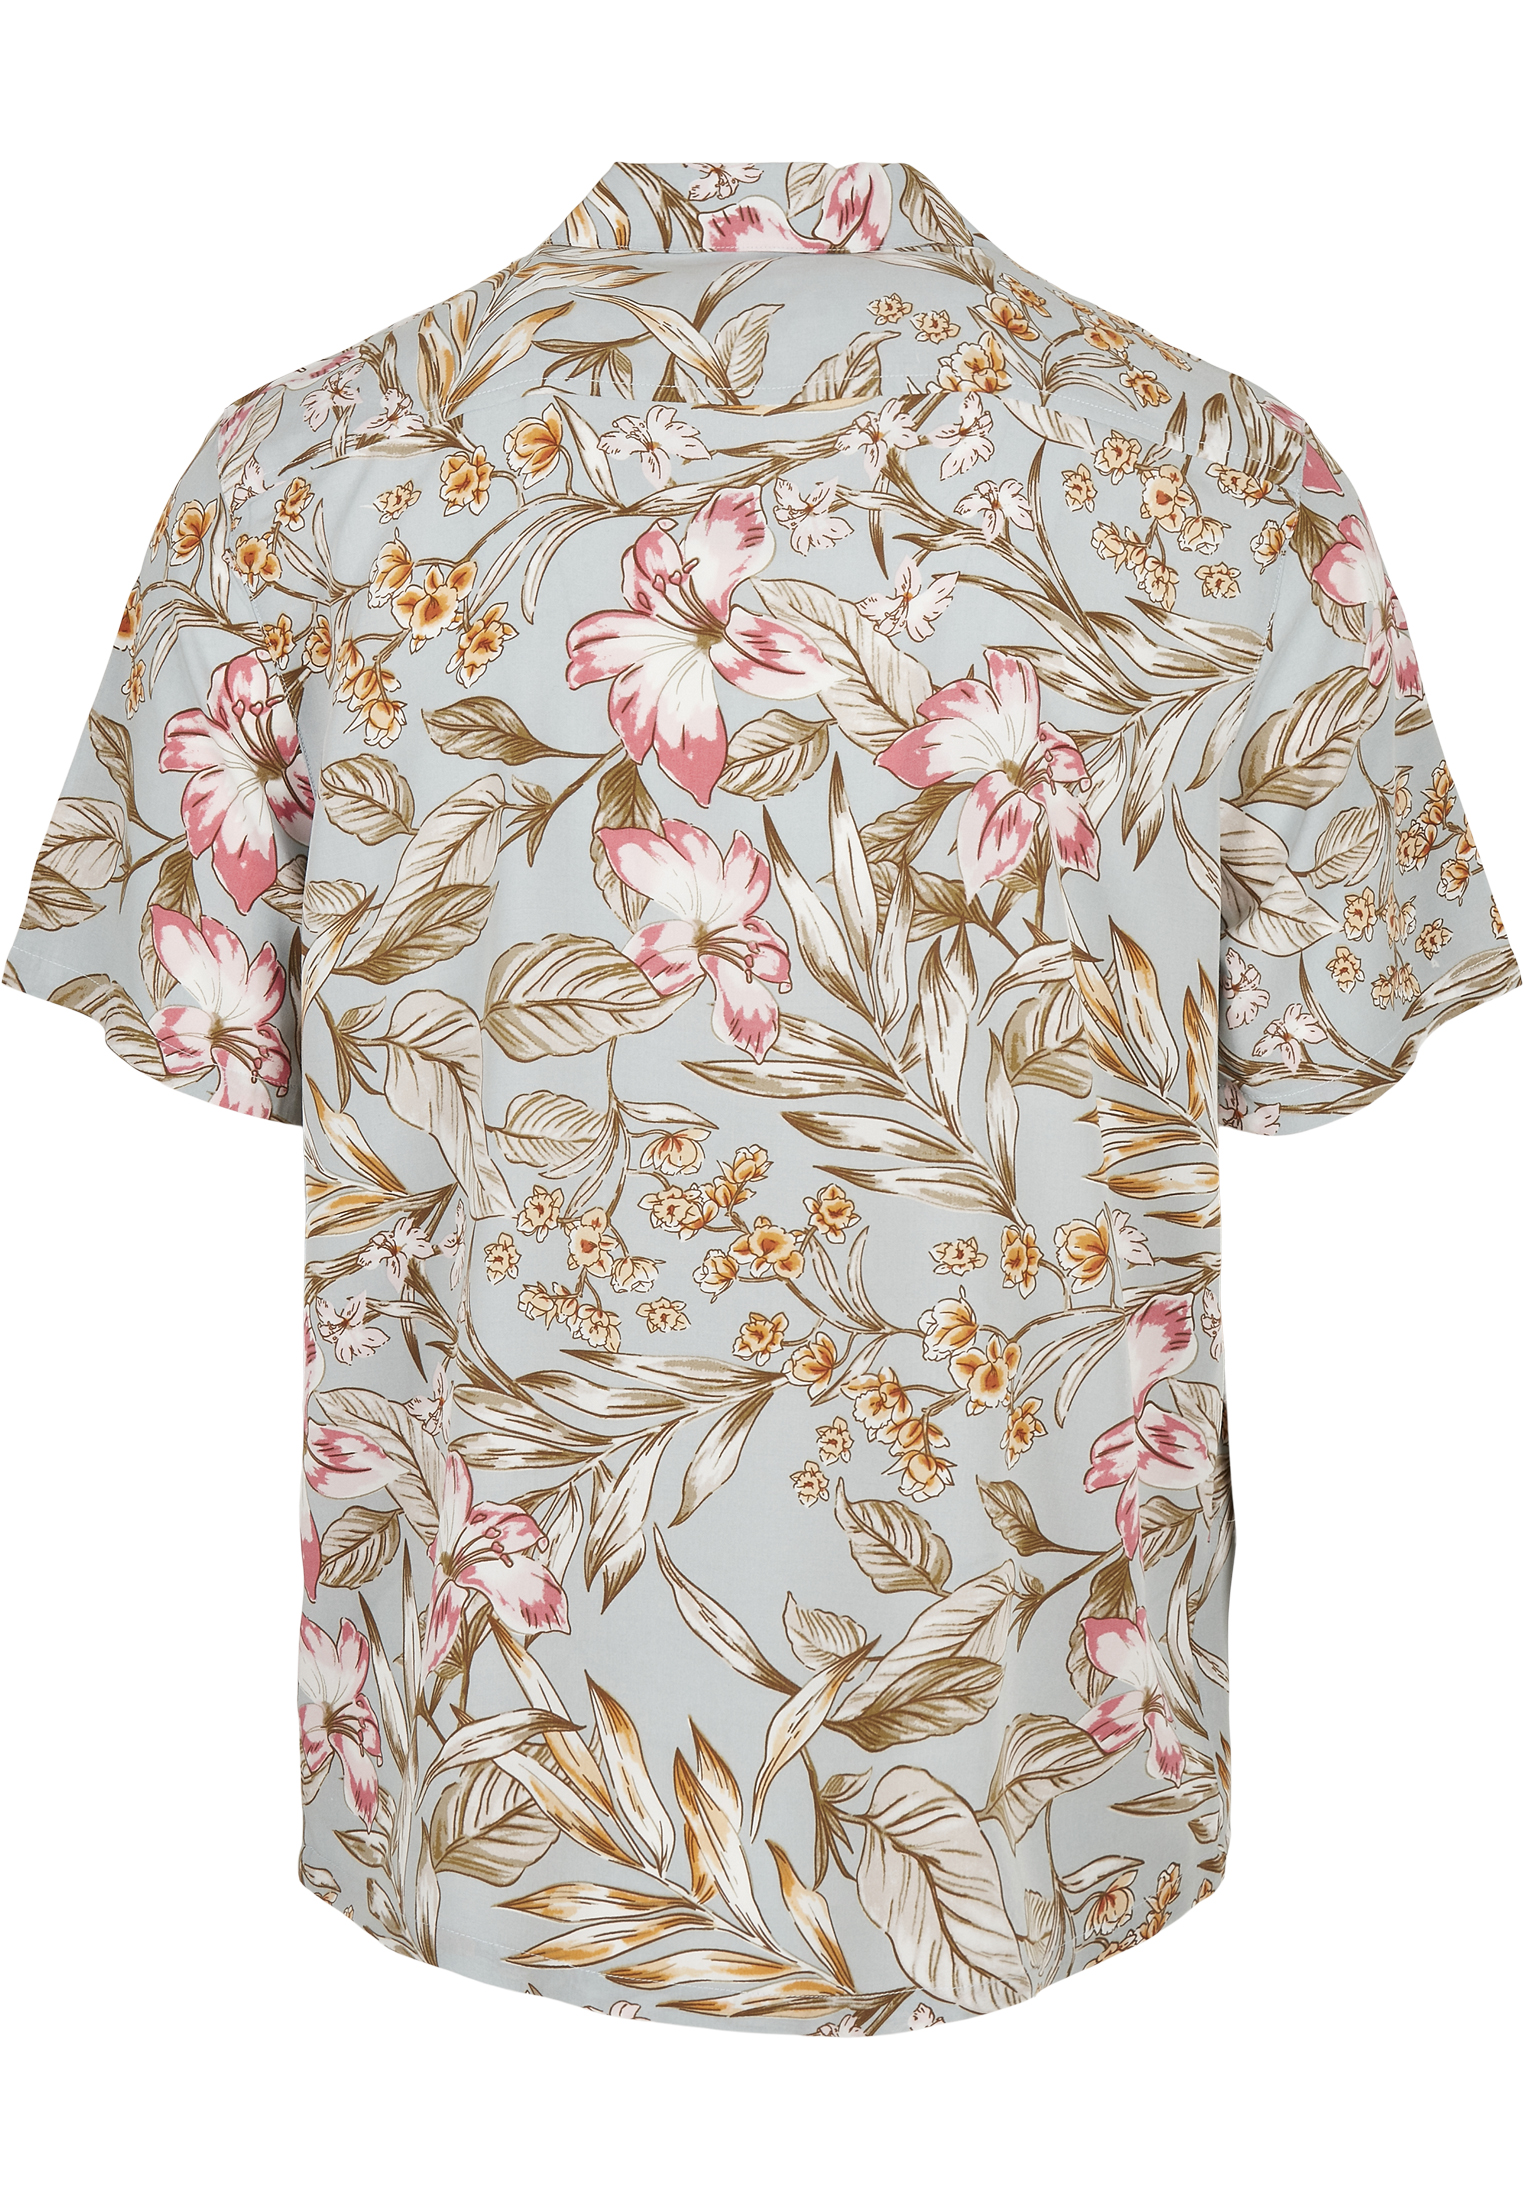 Hemden Viscose Resort Shirt in Farbe lightblue hibiscus